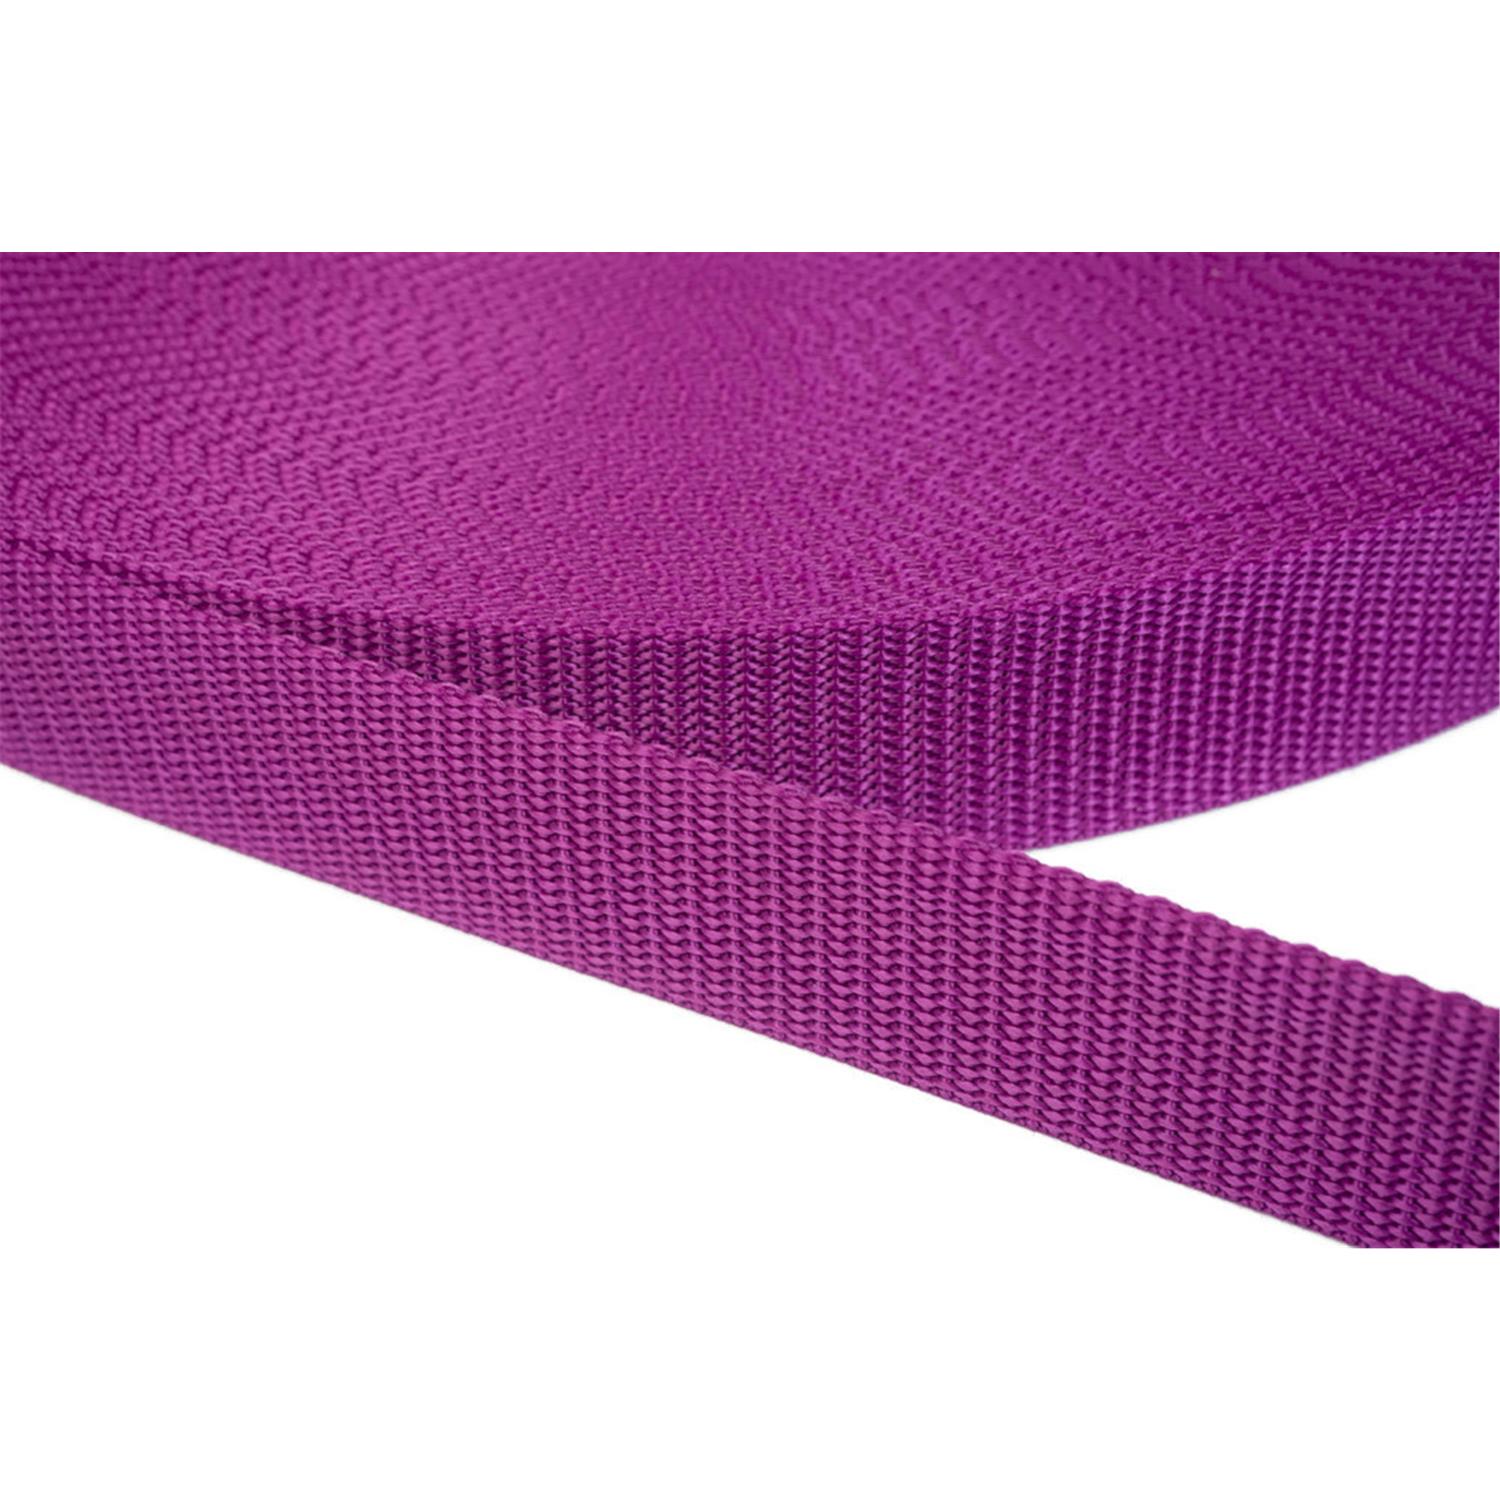 Gurtband 40mm breit aus Polypropylen in 41 Farben 22 - violettrot 50 Meter